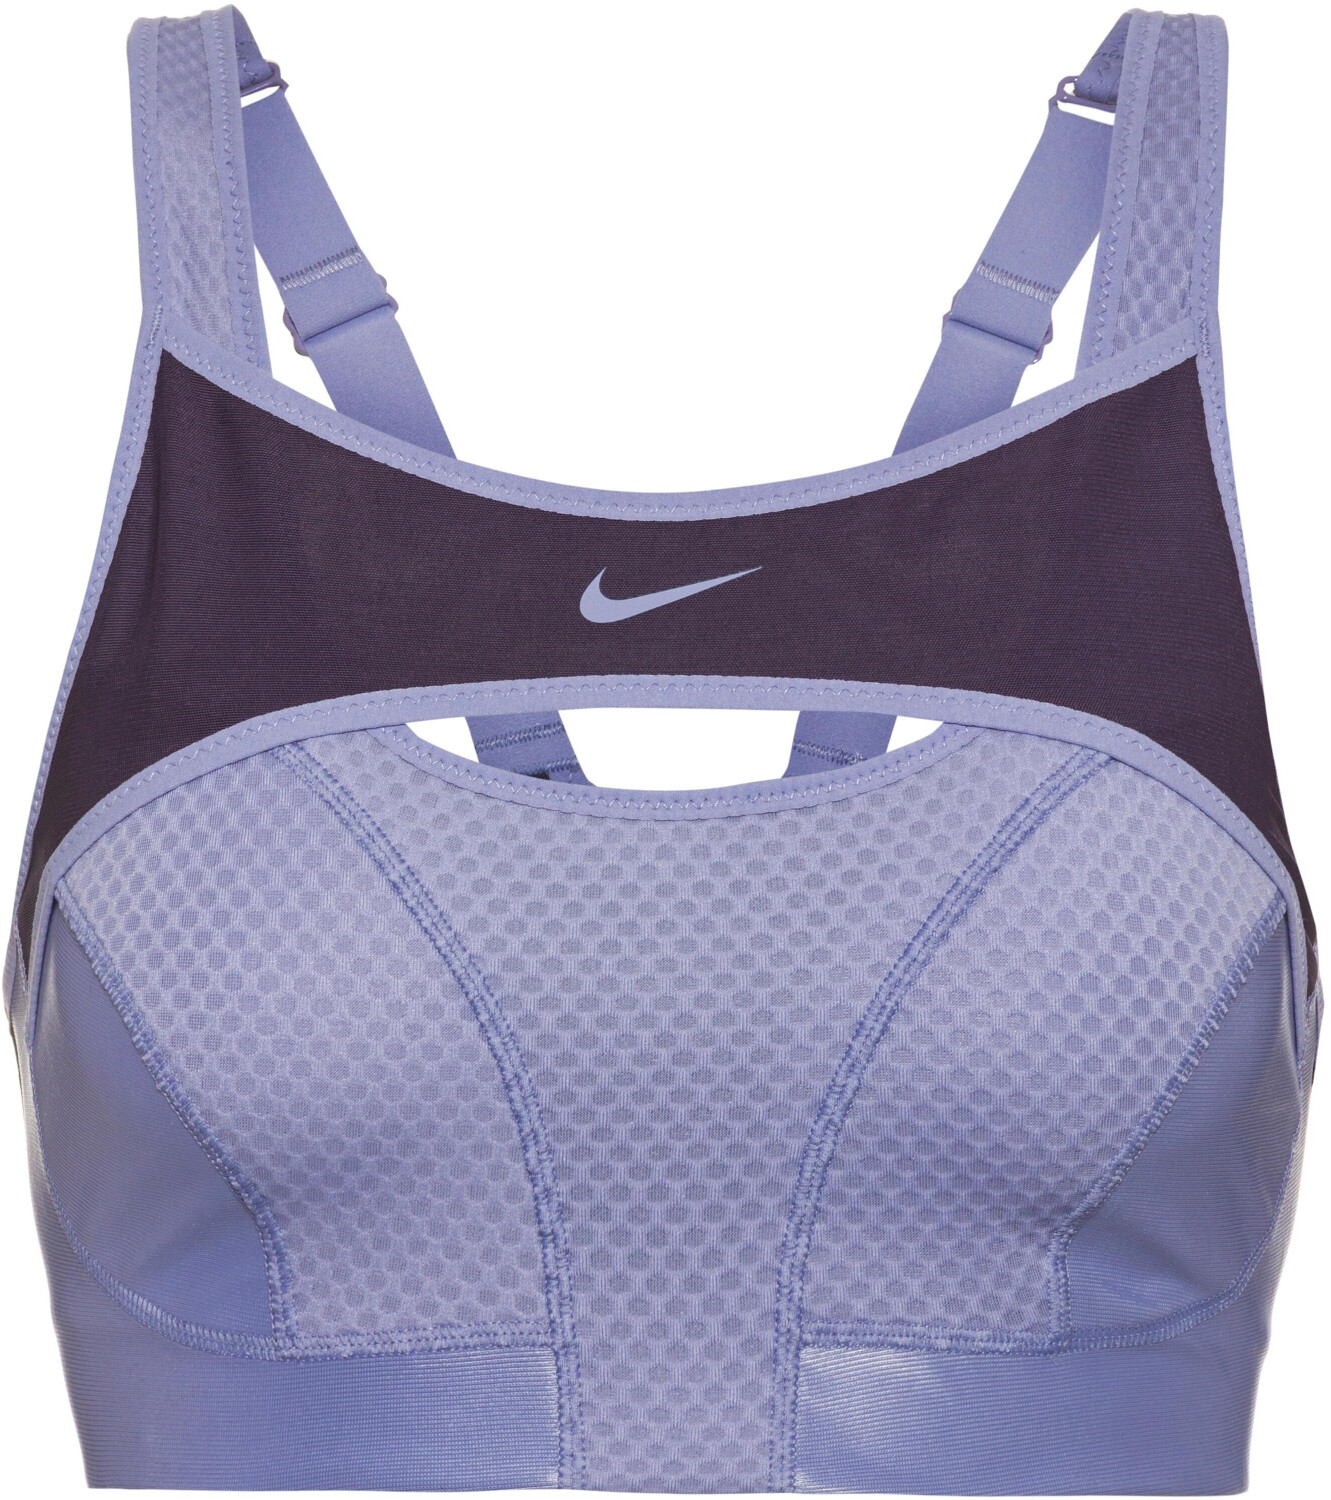 Nike Dri-FIT ADV Alpha High-Support Sports Bra indigo haze/cave  purple/indigo haze/indigo haze ab 45,90 €